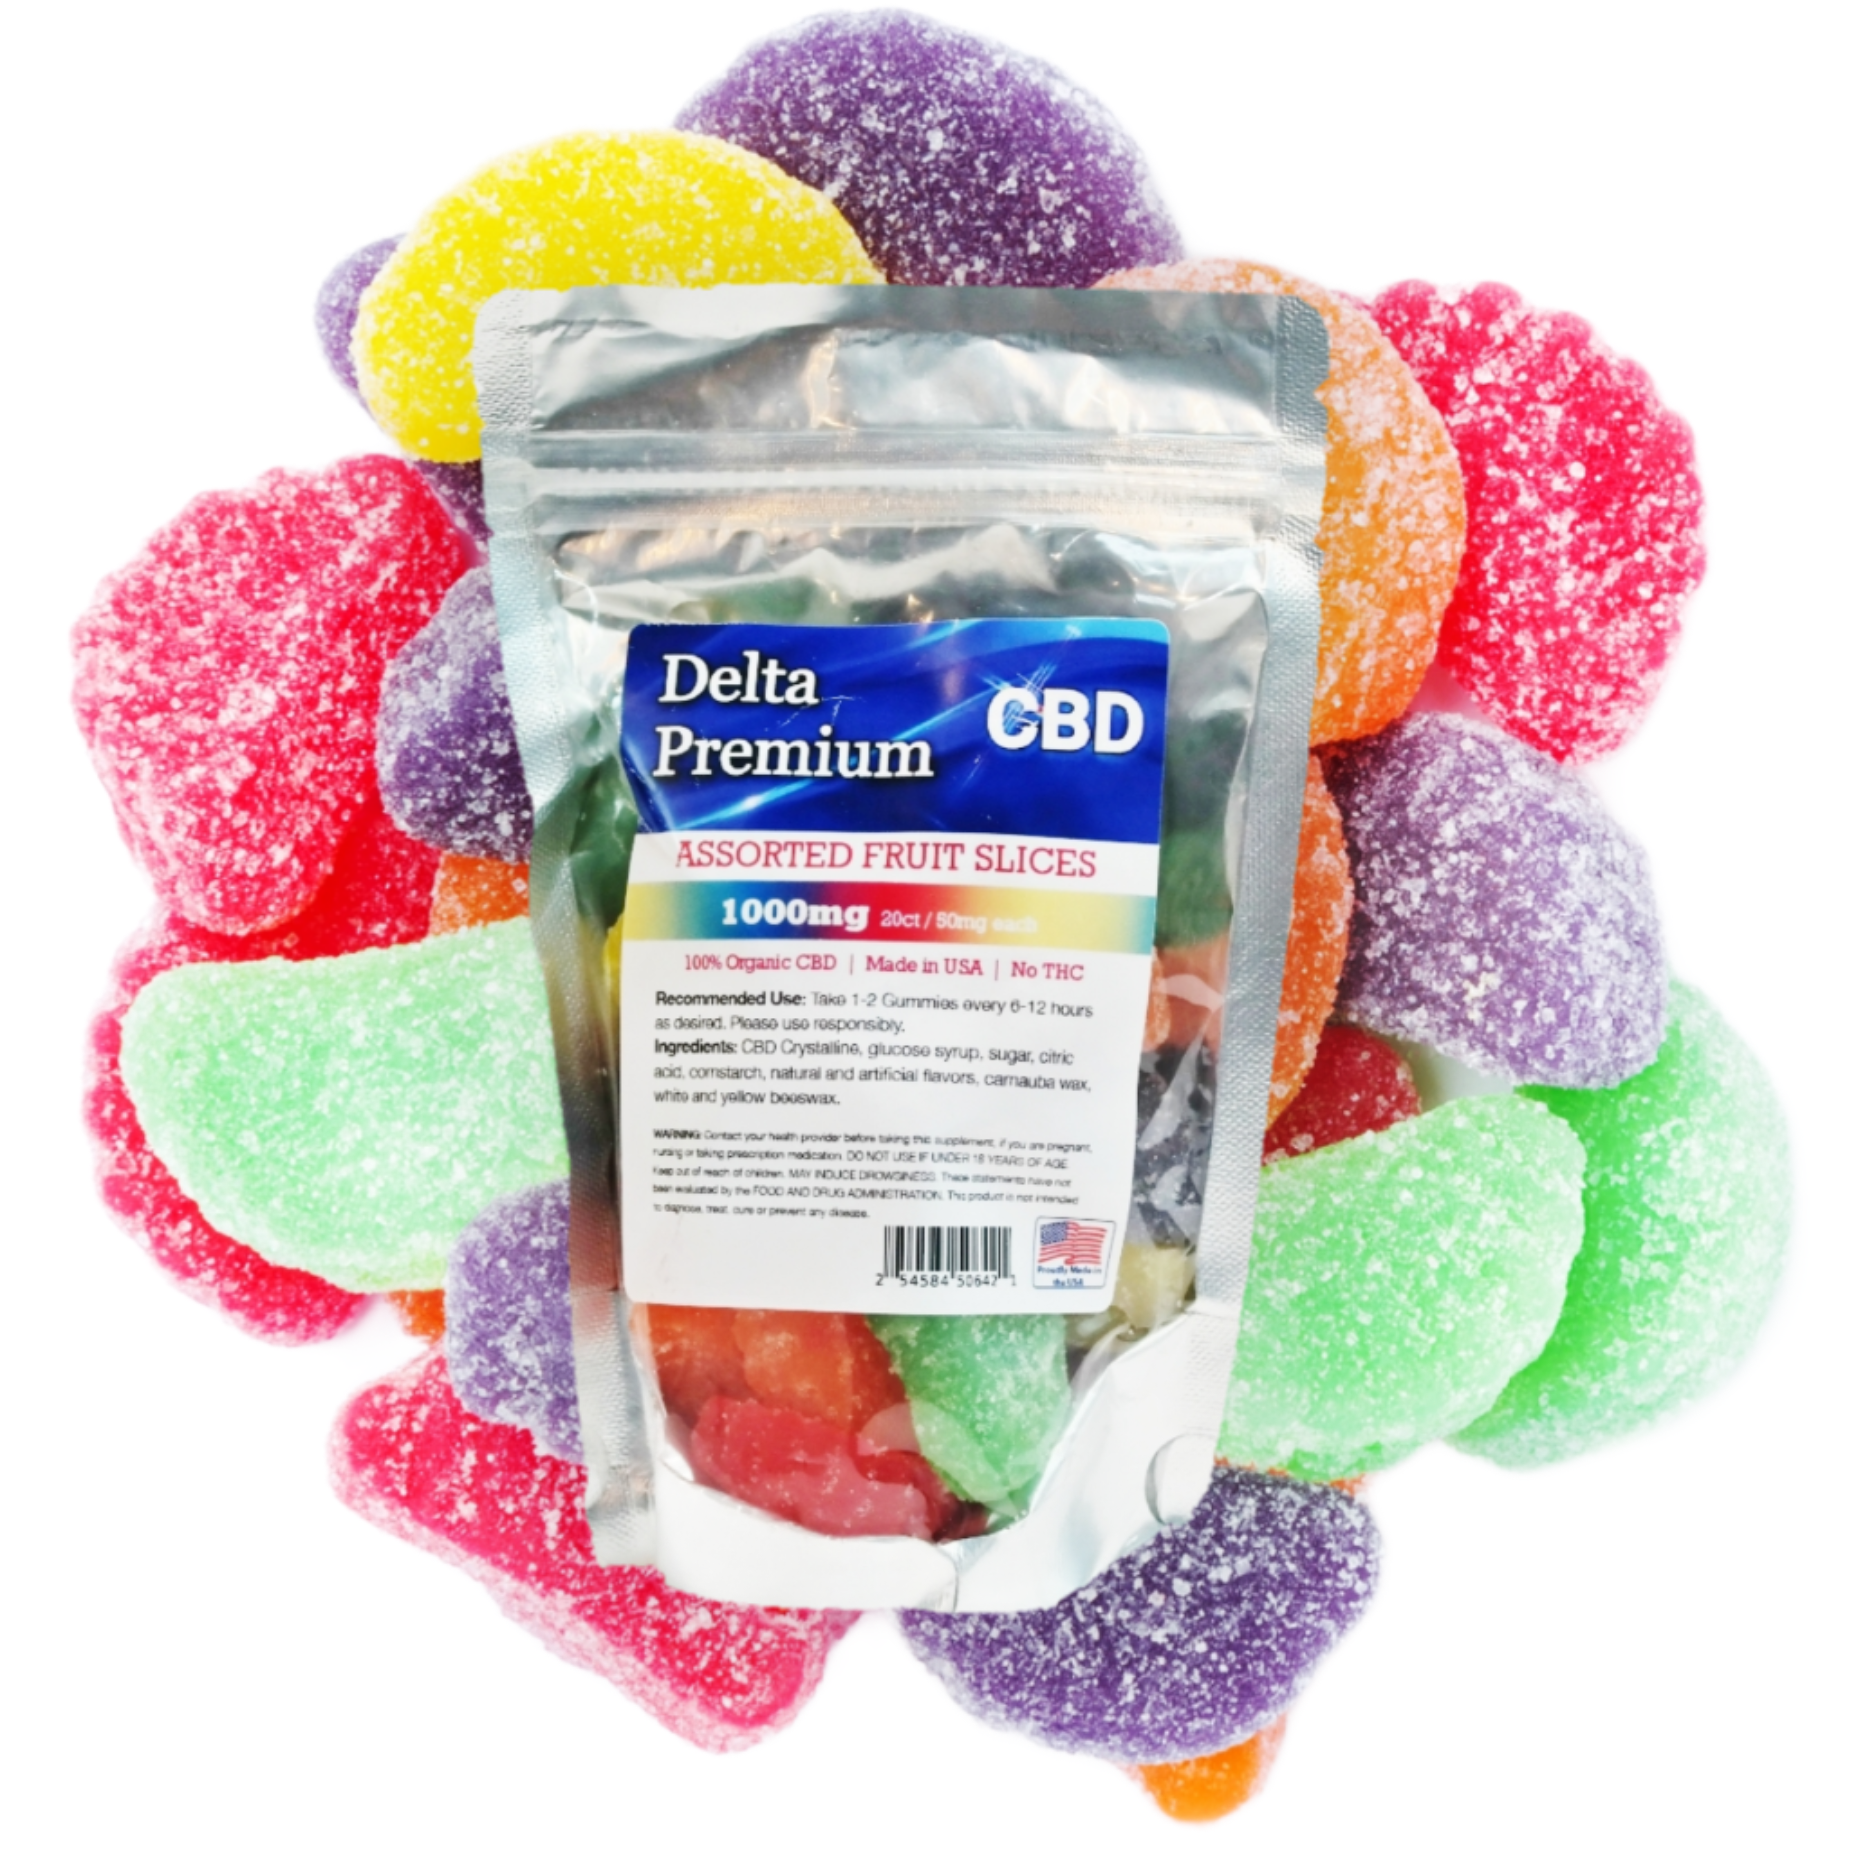 Delta Premium CBD gummies